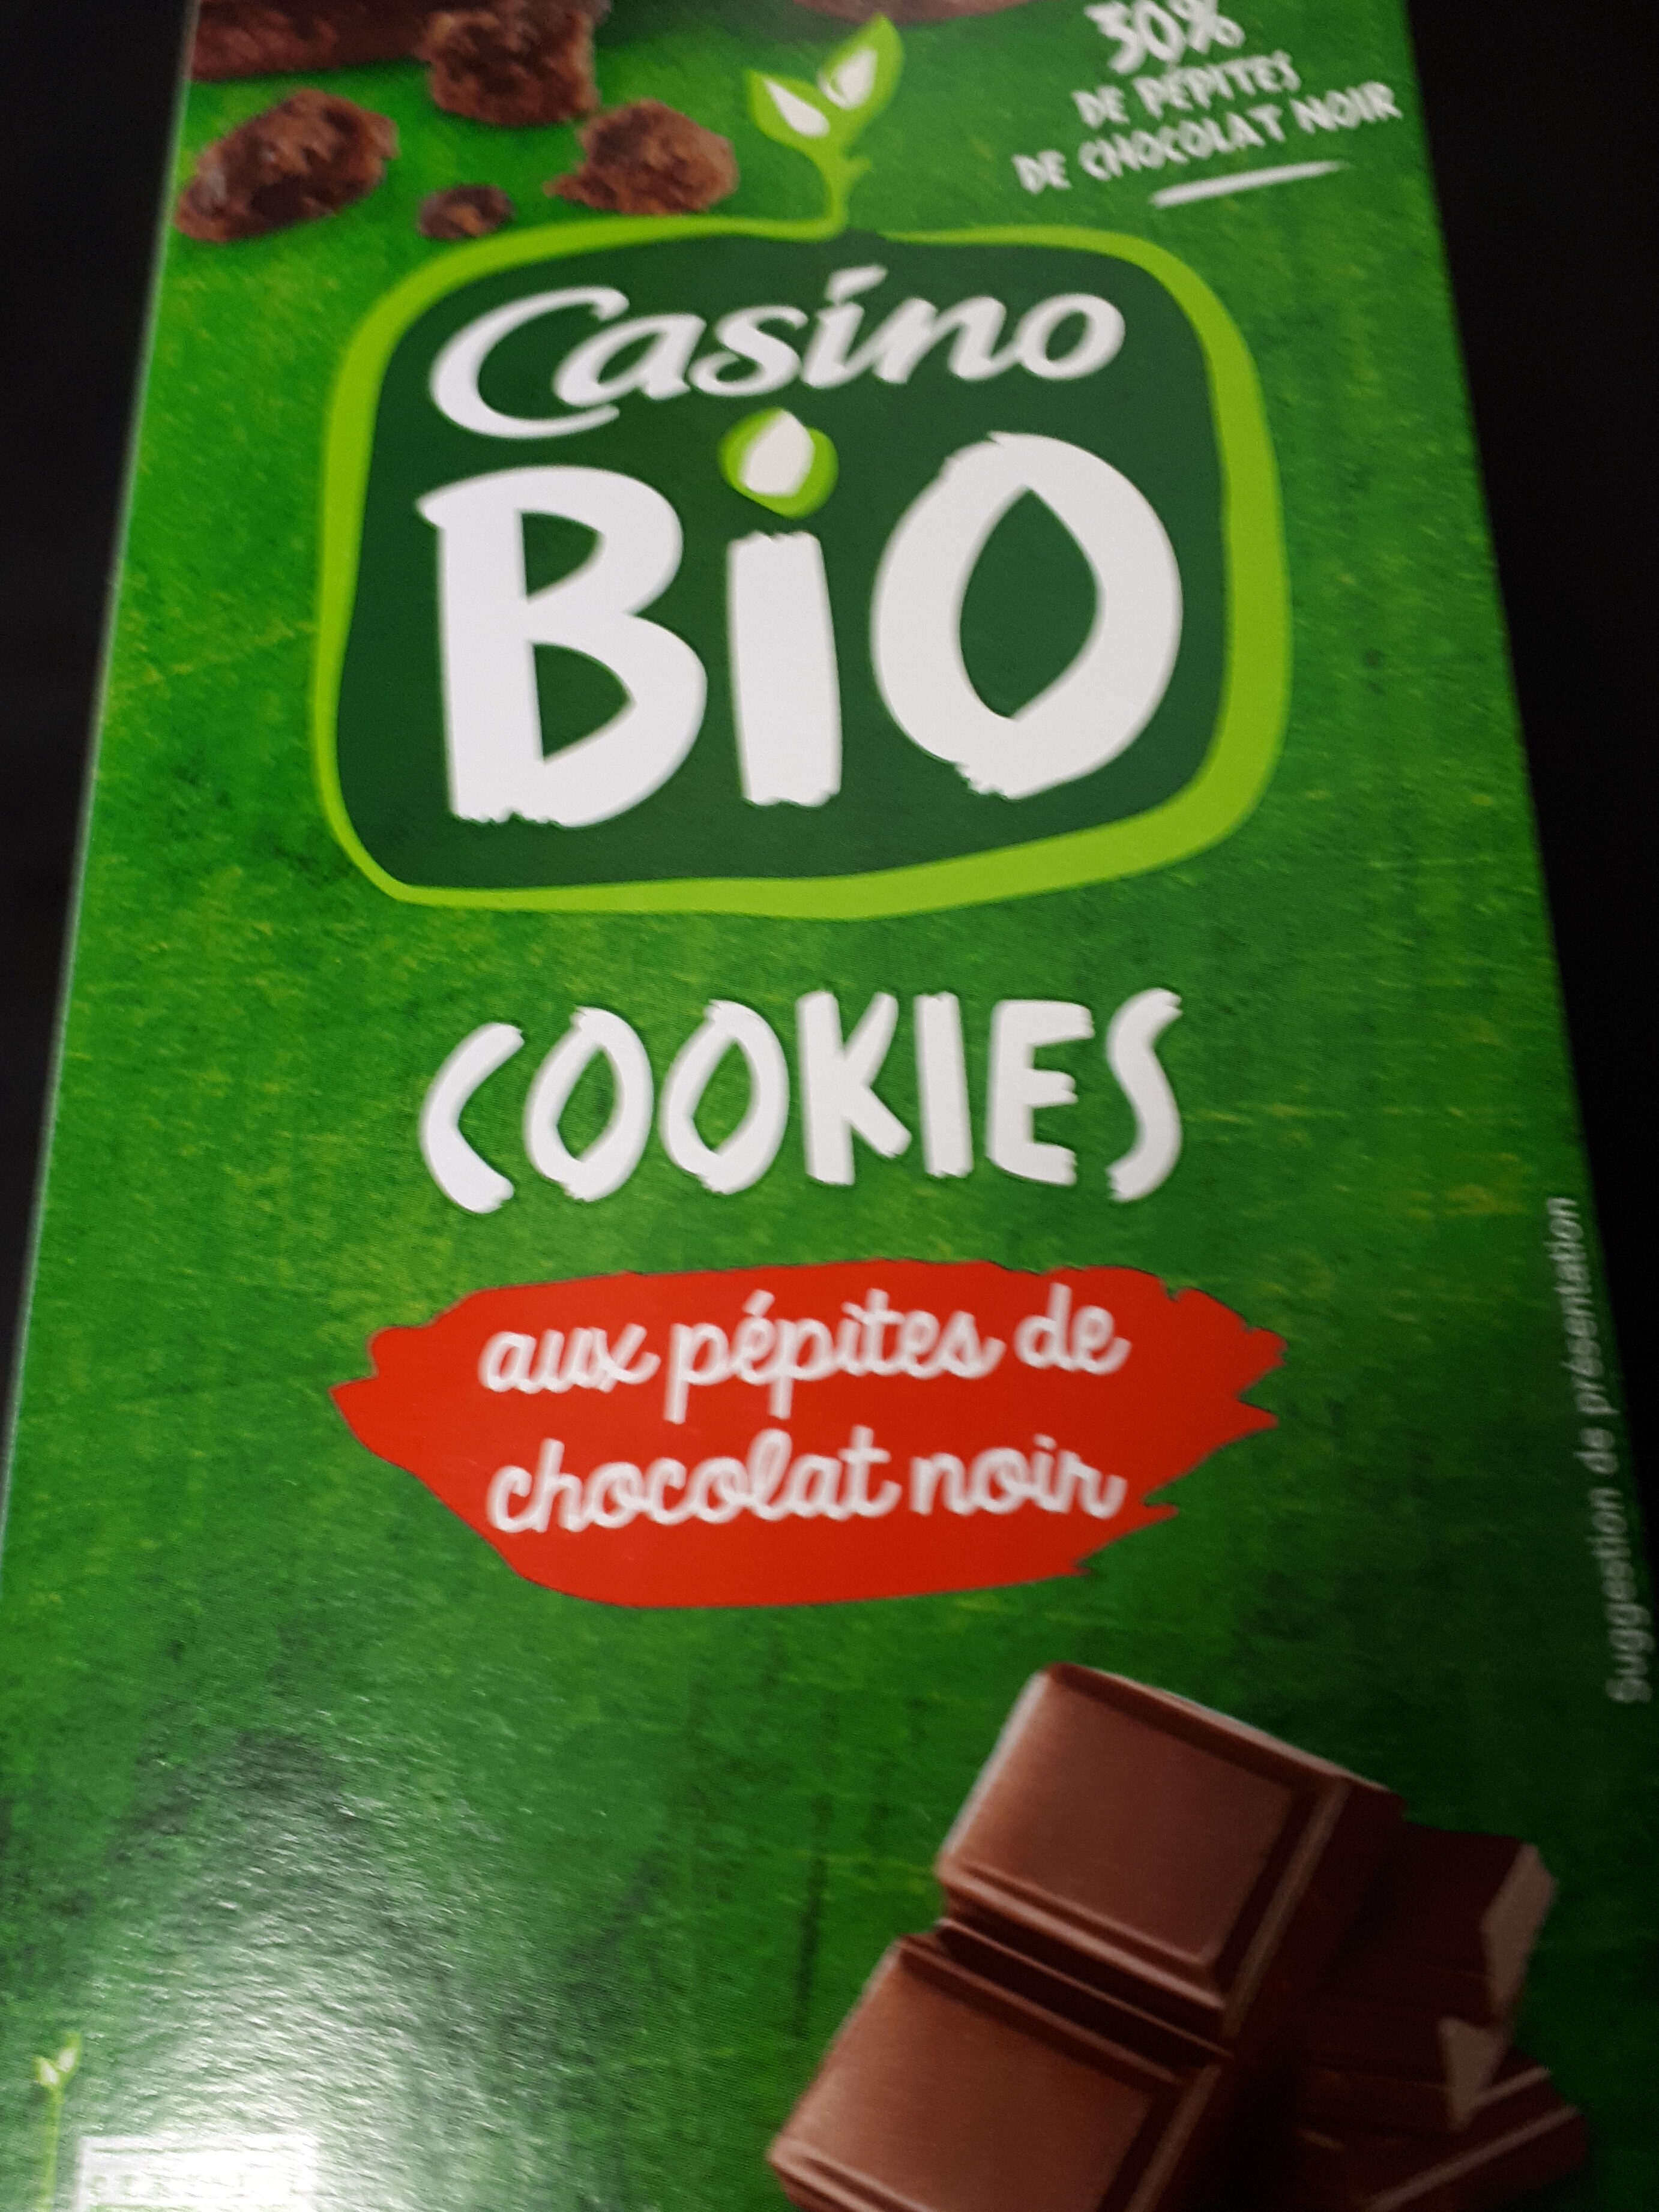 Cookies aux pépites de chocolat noir - Product - fr